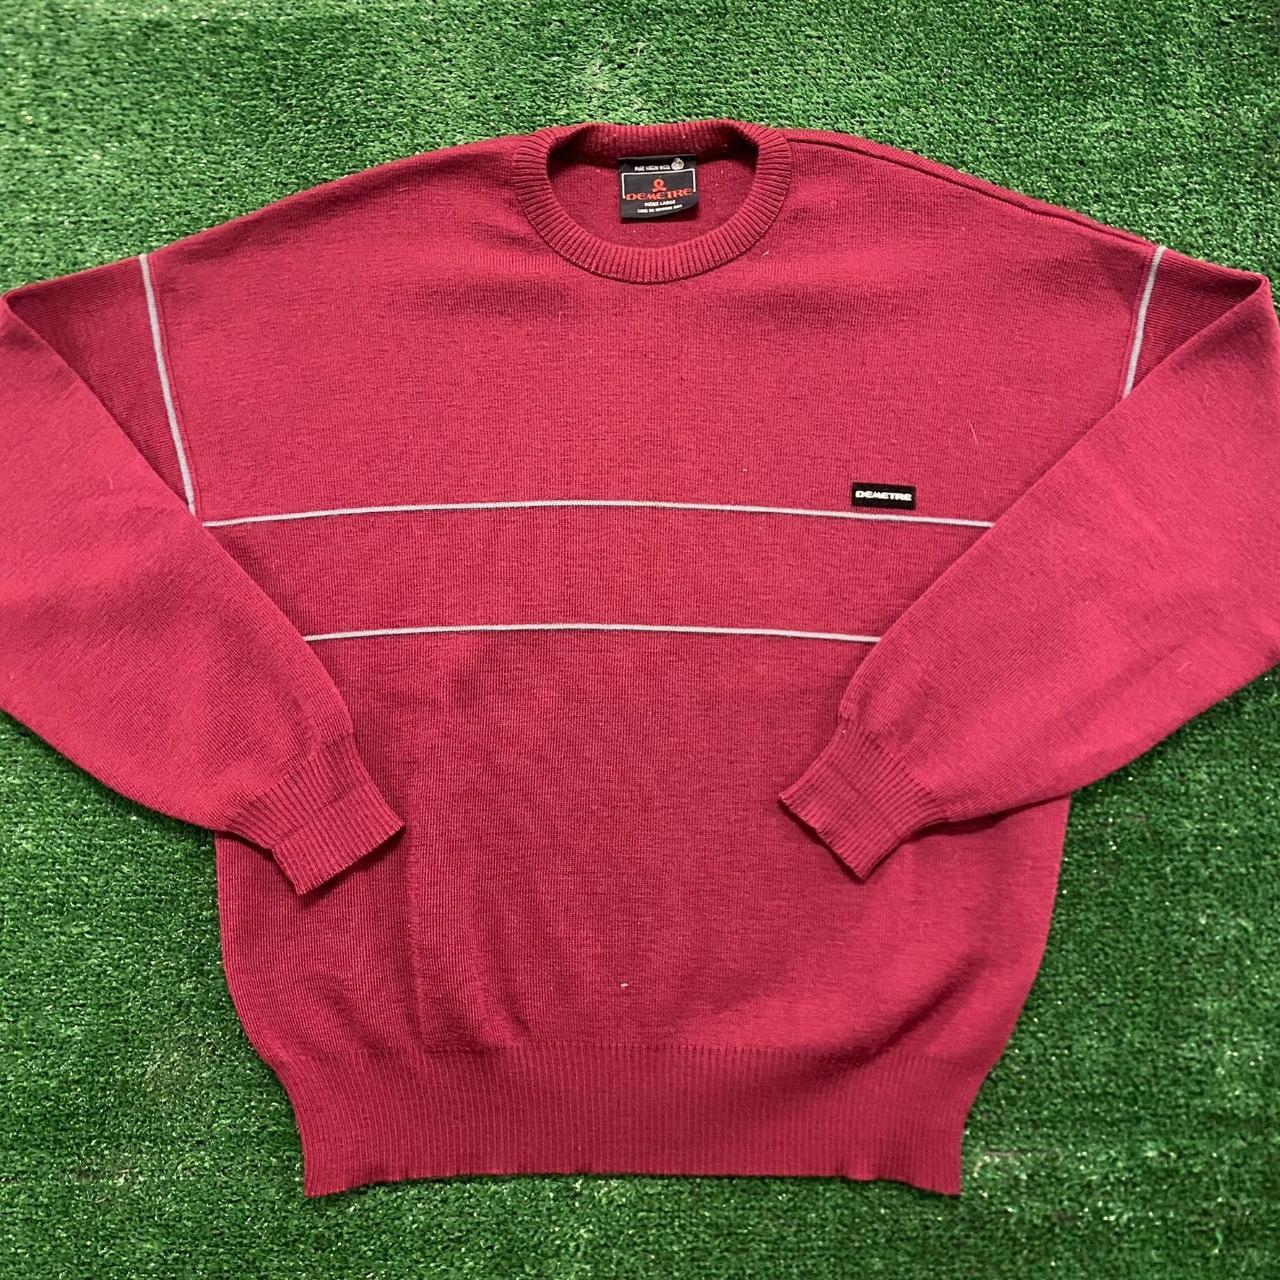 Vintage Men's Sweater - Red - L